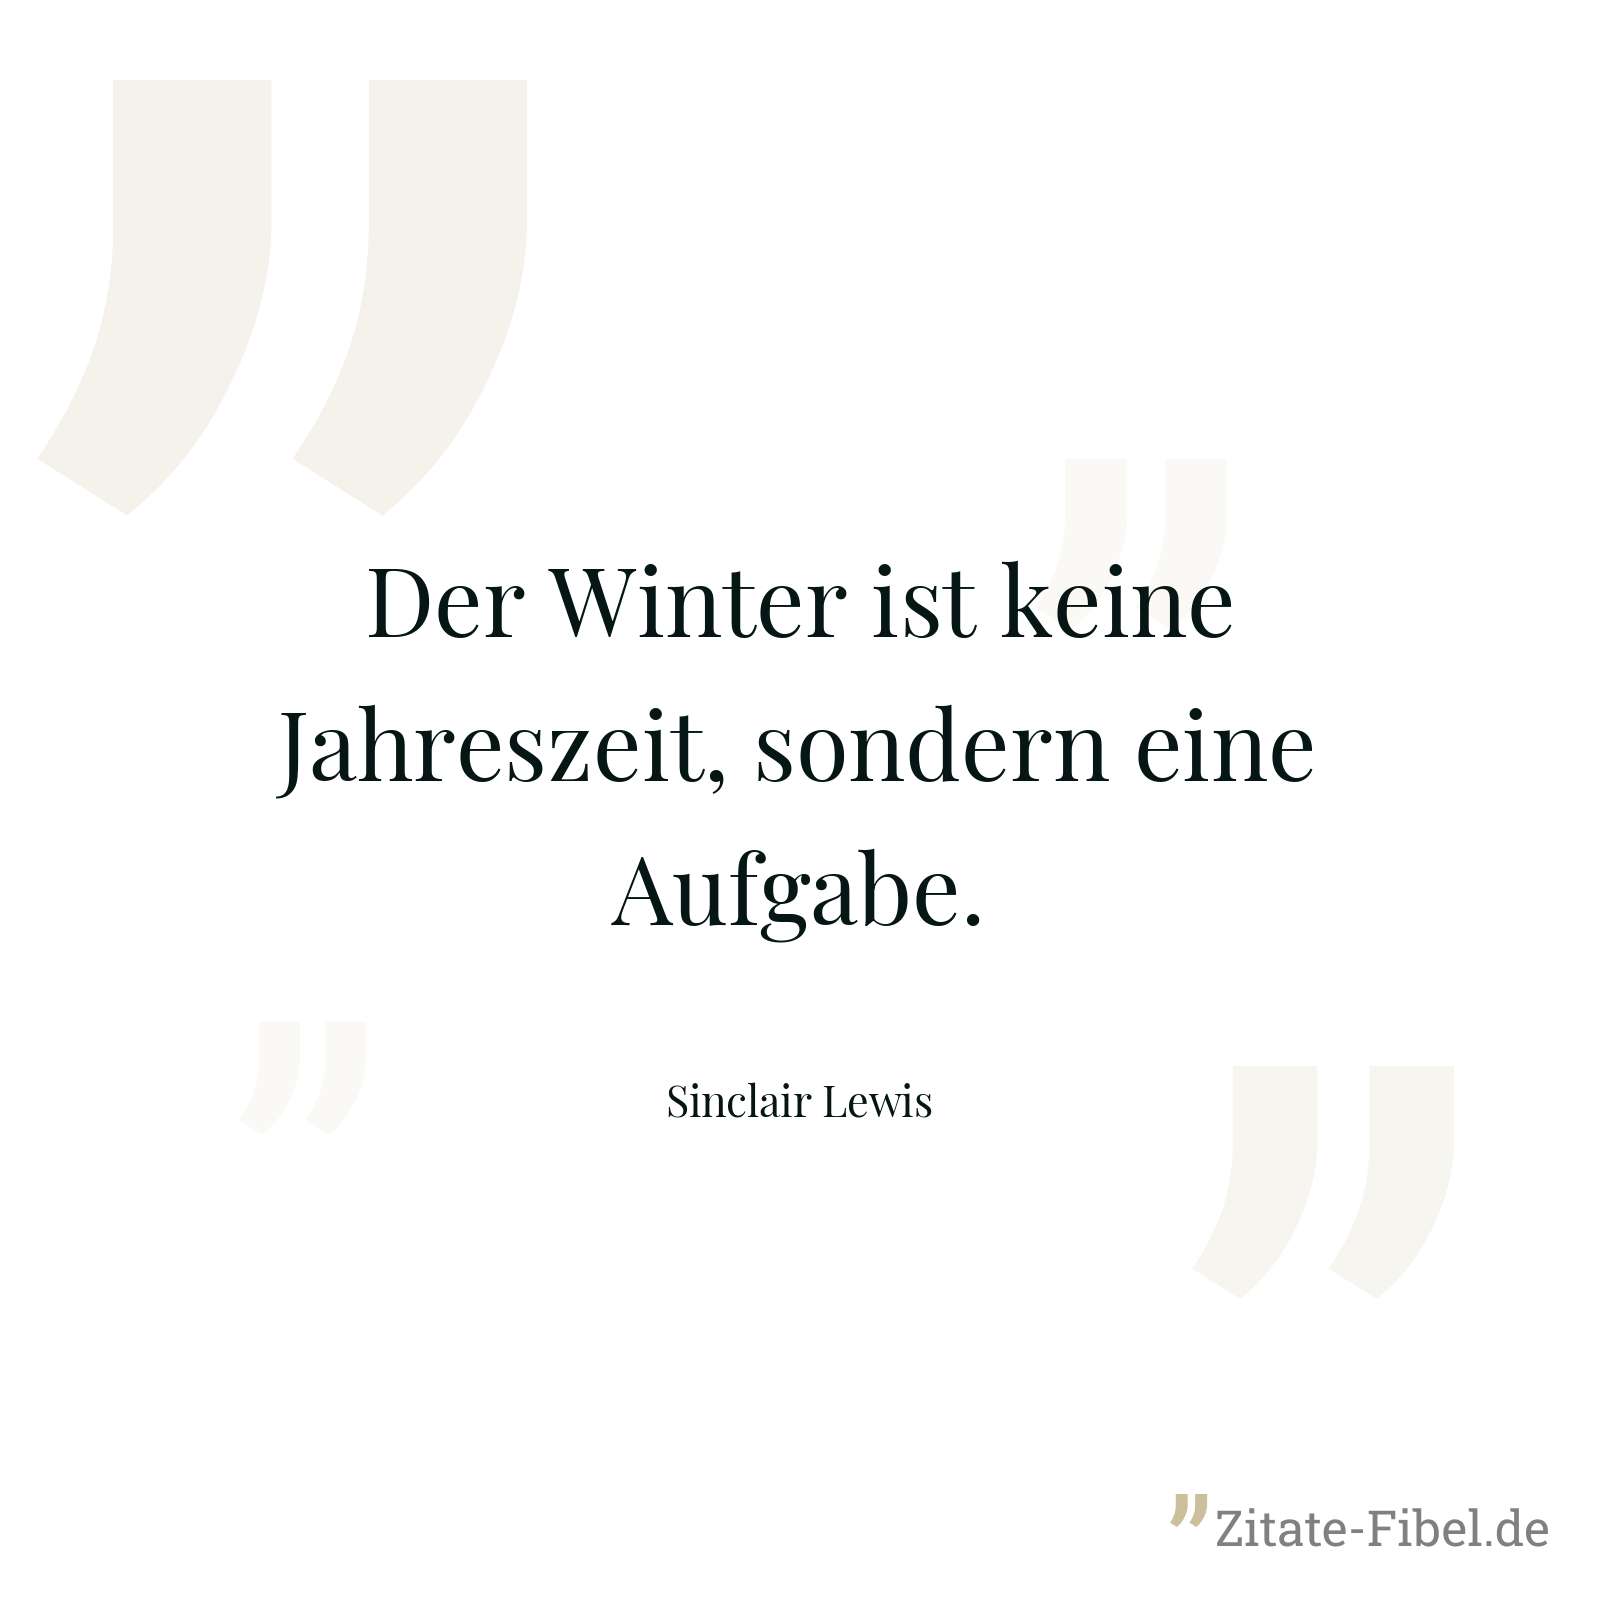 Der Winter ist keine Jahreszeit, sondern eine Aufgabe. - Sinclair Lewis